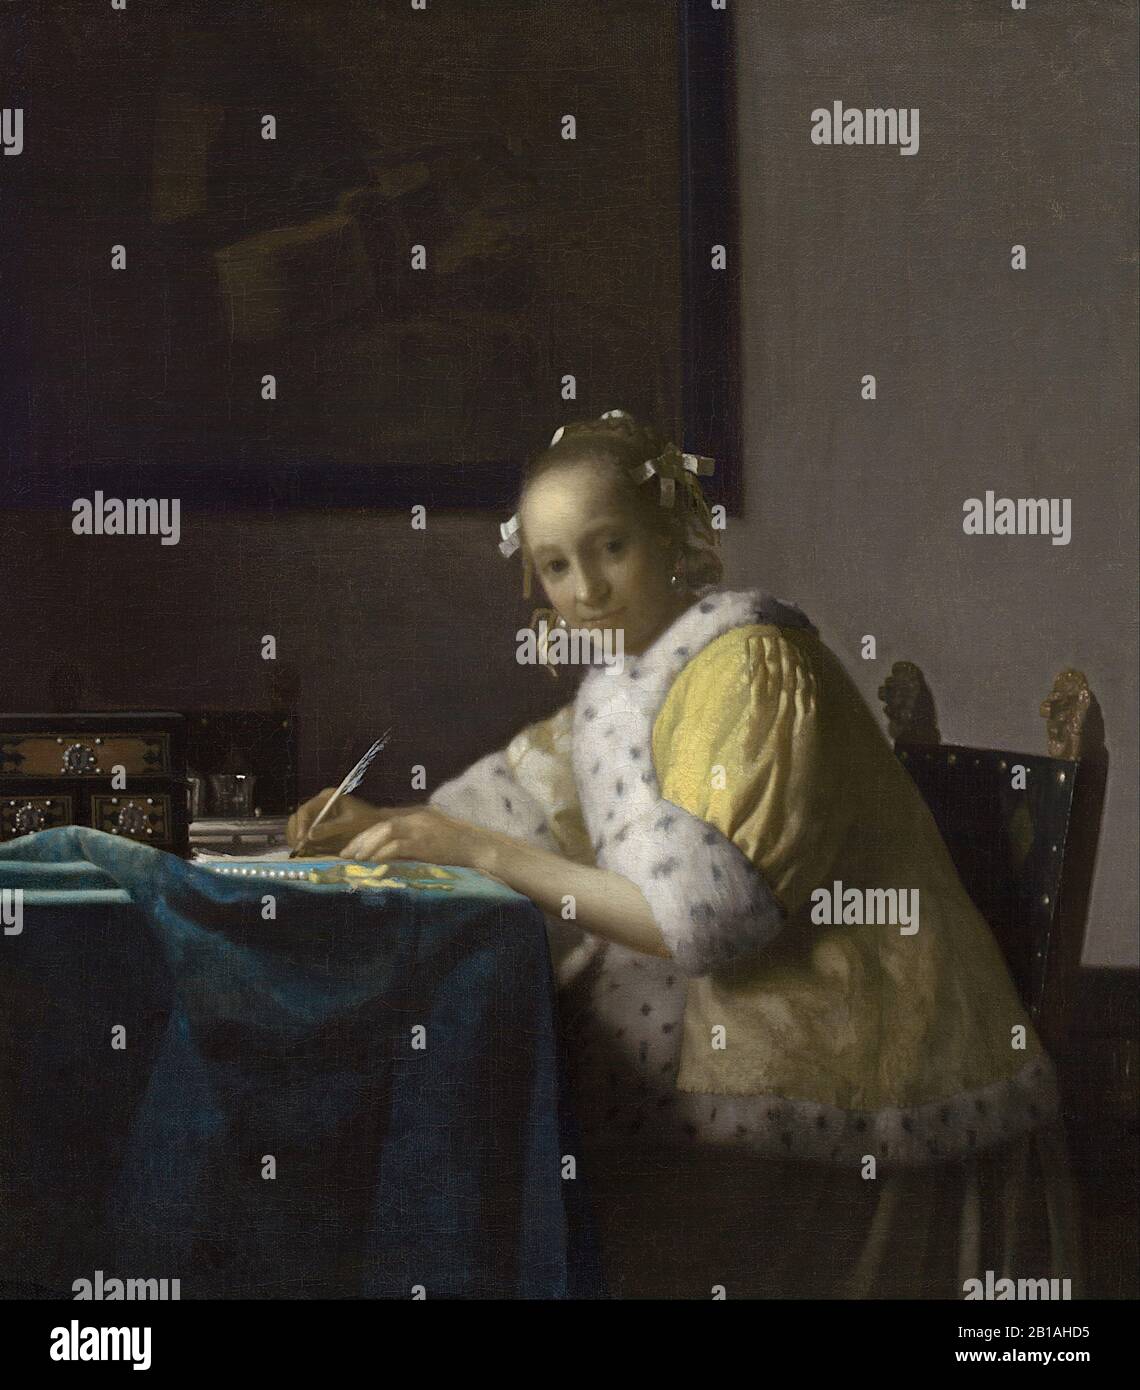 A Lady Writing a Letter (1665 circa) di Johannes Vermeer - 17th Secolo pittura barocca Olandese - Immagine Ad Altissima risoluzione e di qualità Foto Stock